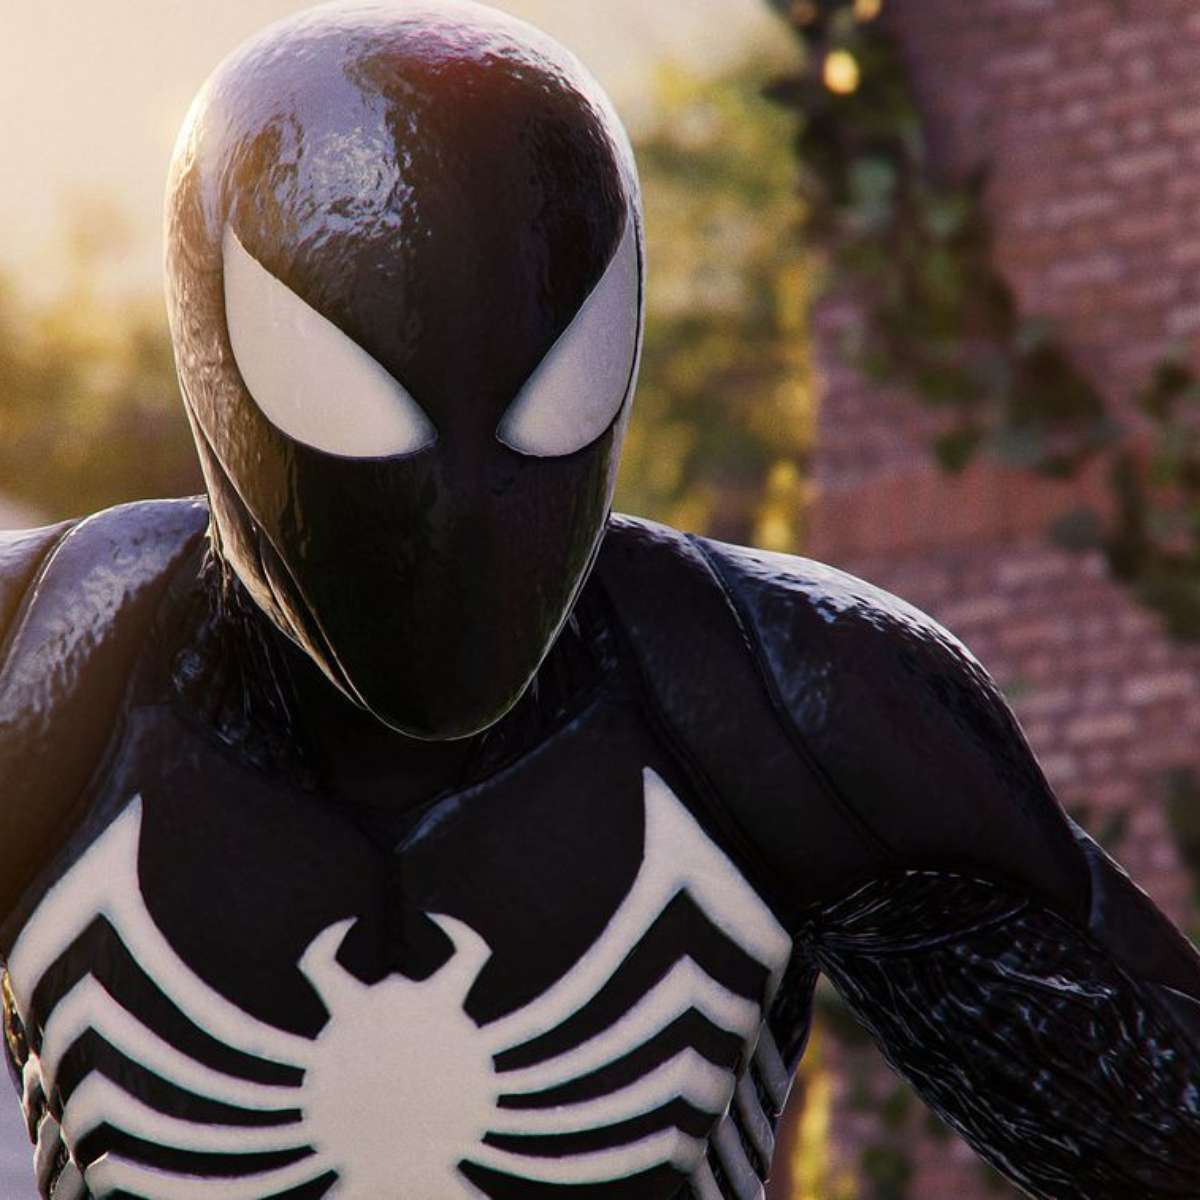 Marvel's Spider-Man 2  Como conseguir todos os trajes do jogo - Canaltech